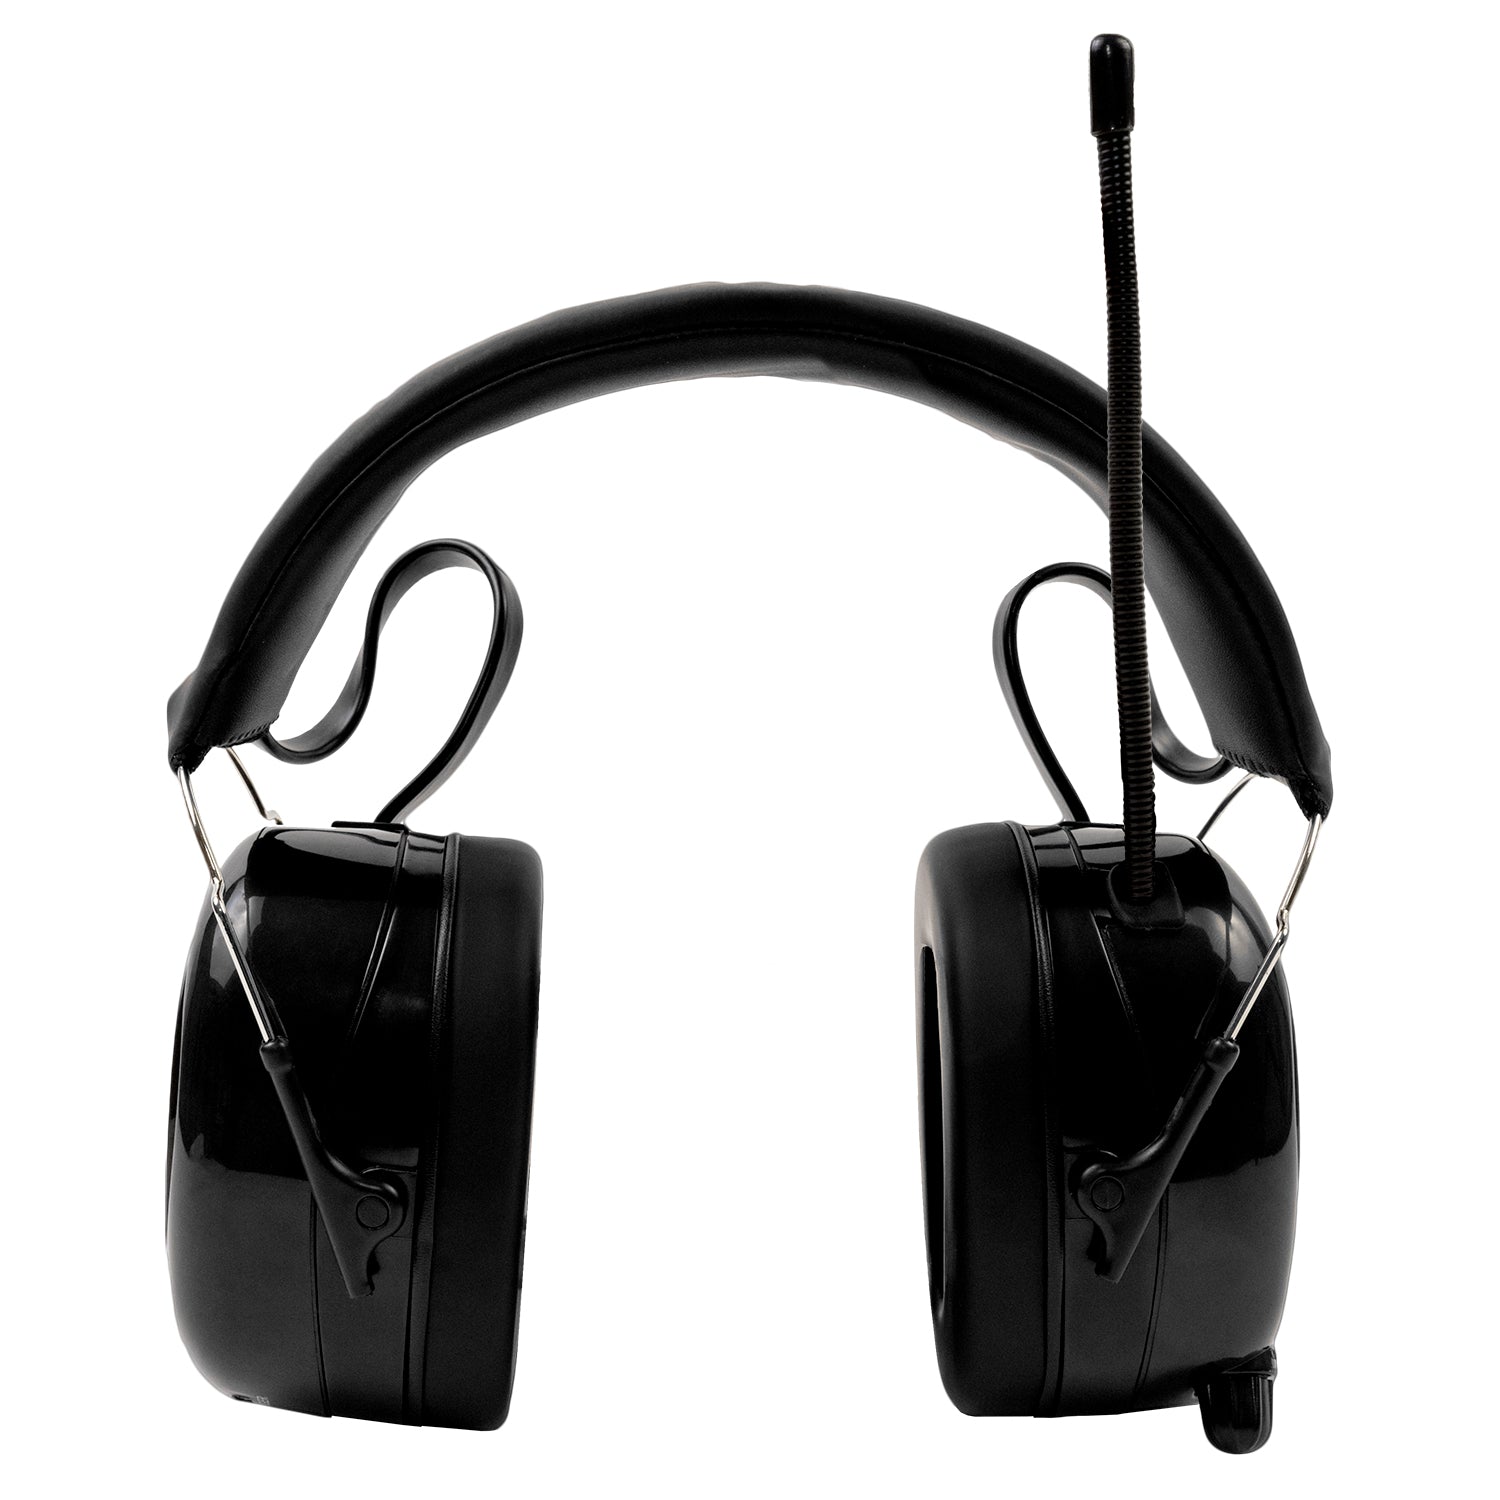 Verstoring arm hanger 24h Le Mans Radio and Bluetooth Oorkap voor gehoor bescherming en muziek  tijdens uw favoriete races – Alpine Hearing Protection